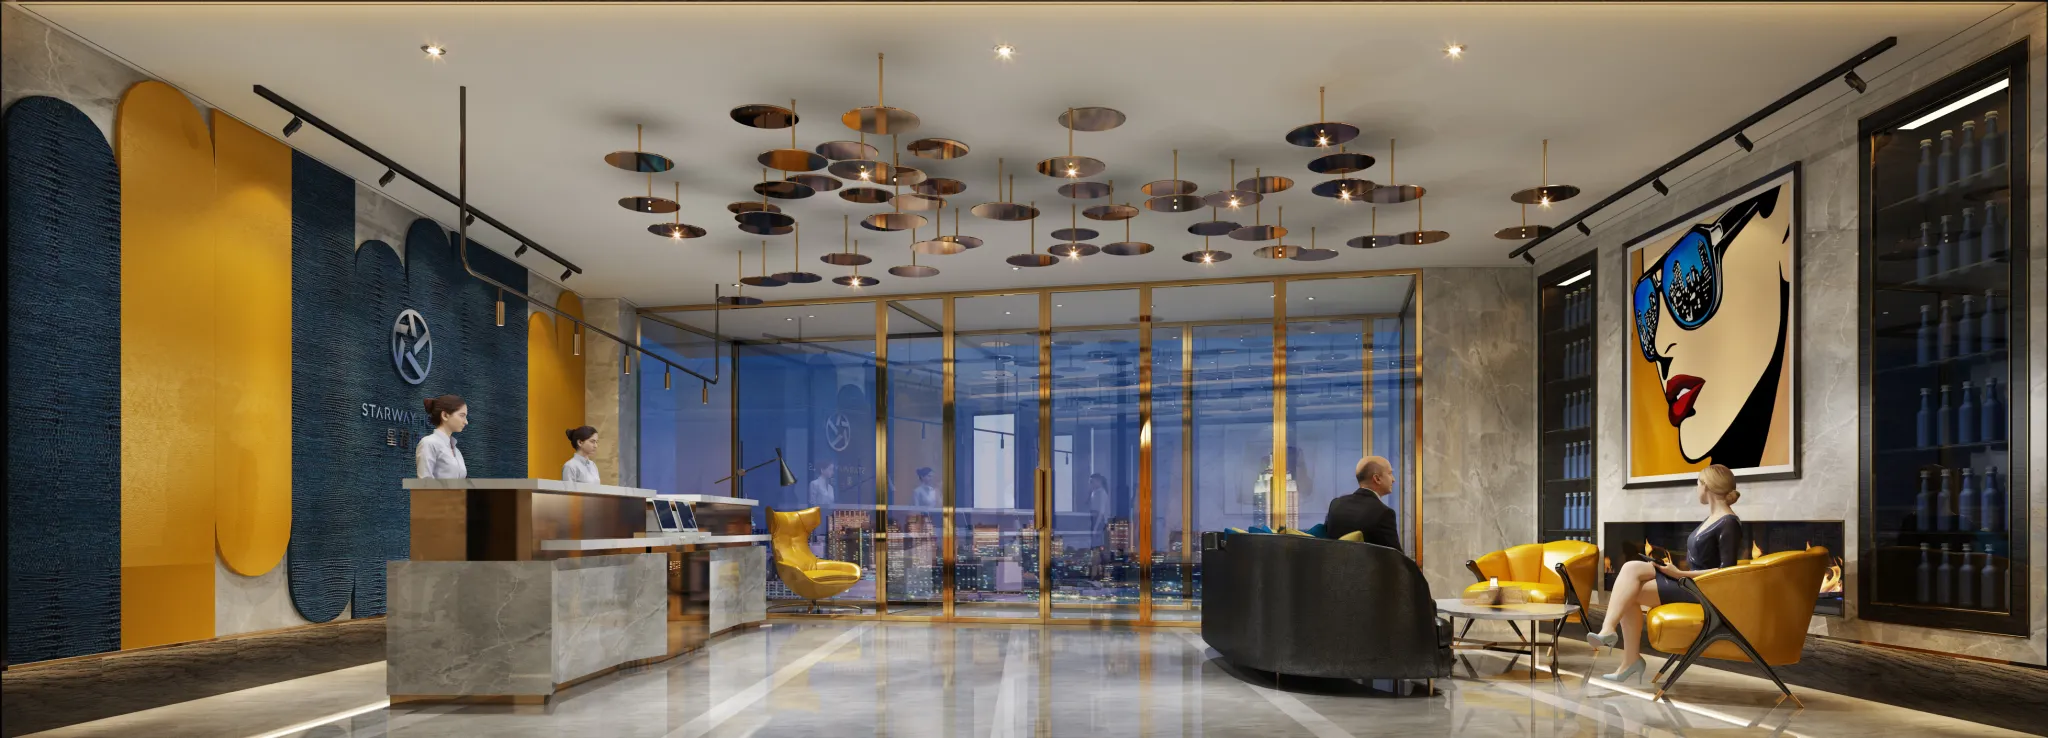 Cooldesign Interior 20 – Public Space – HOTEL – 2